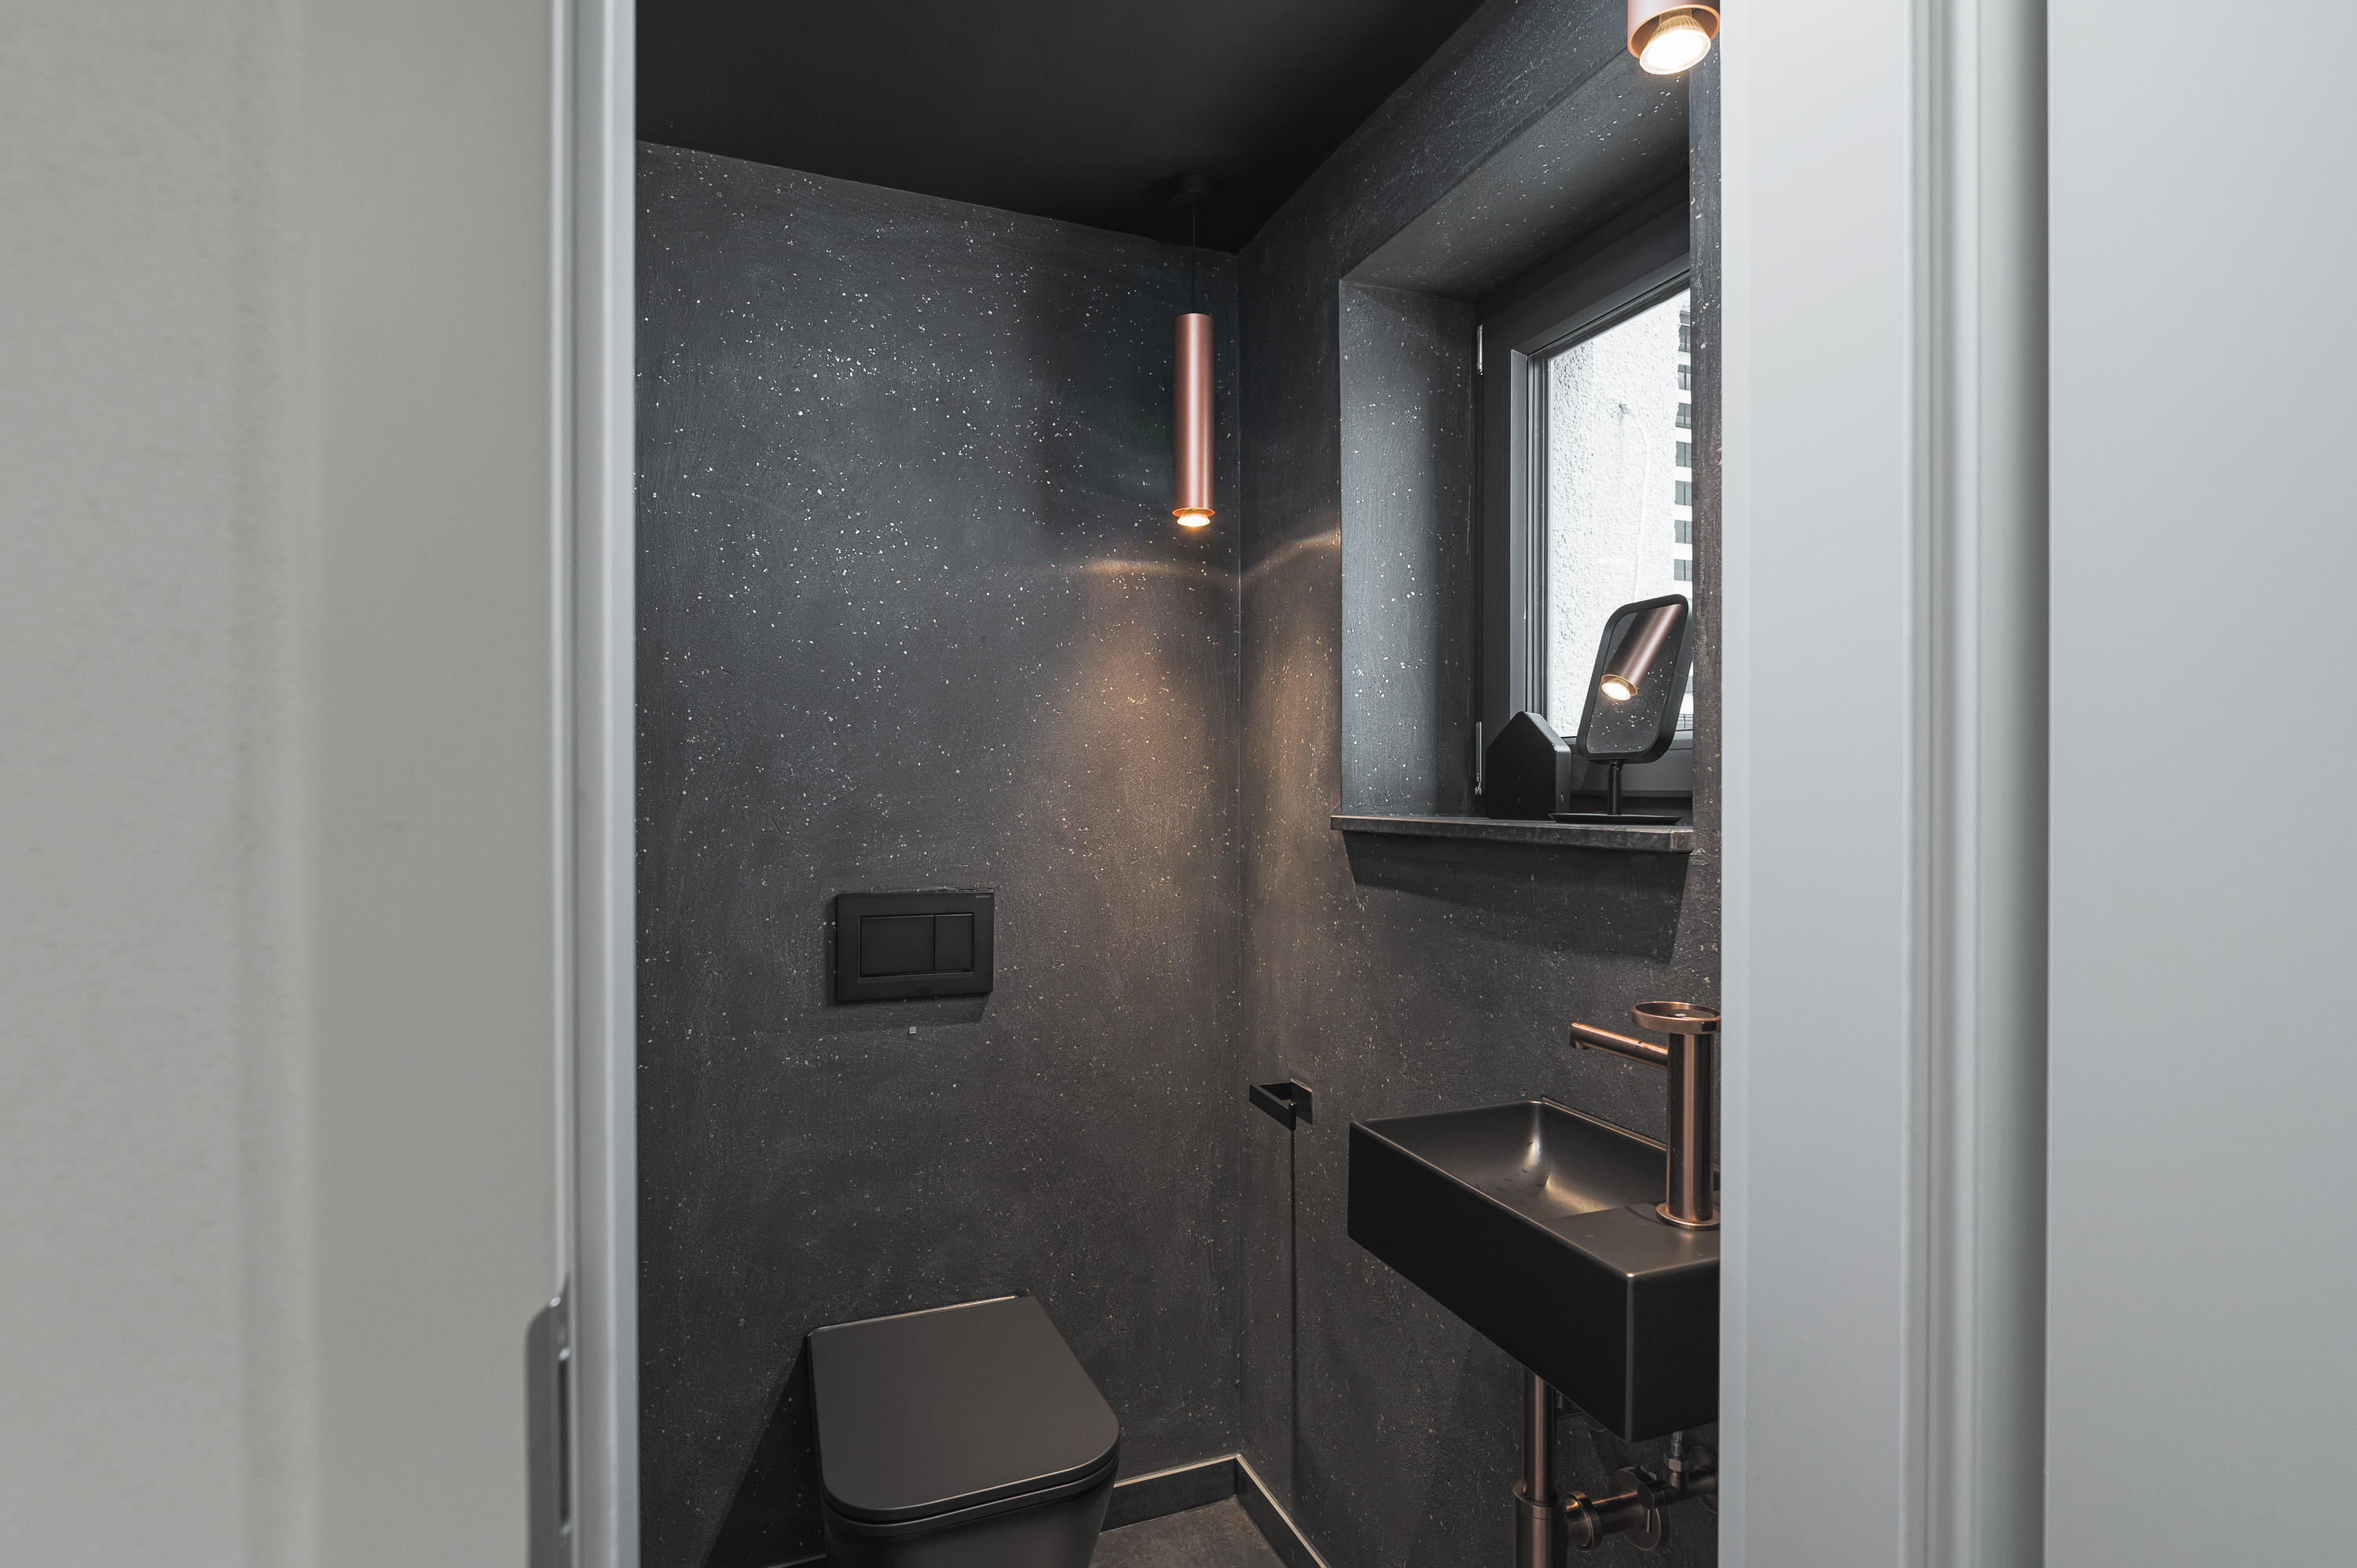 Gäste WC in Schwarz gestaltet WoW Effekt Spachteltechnik